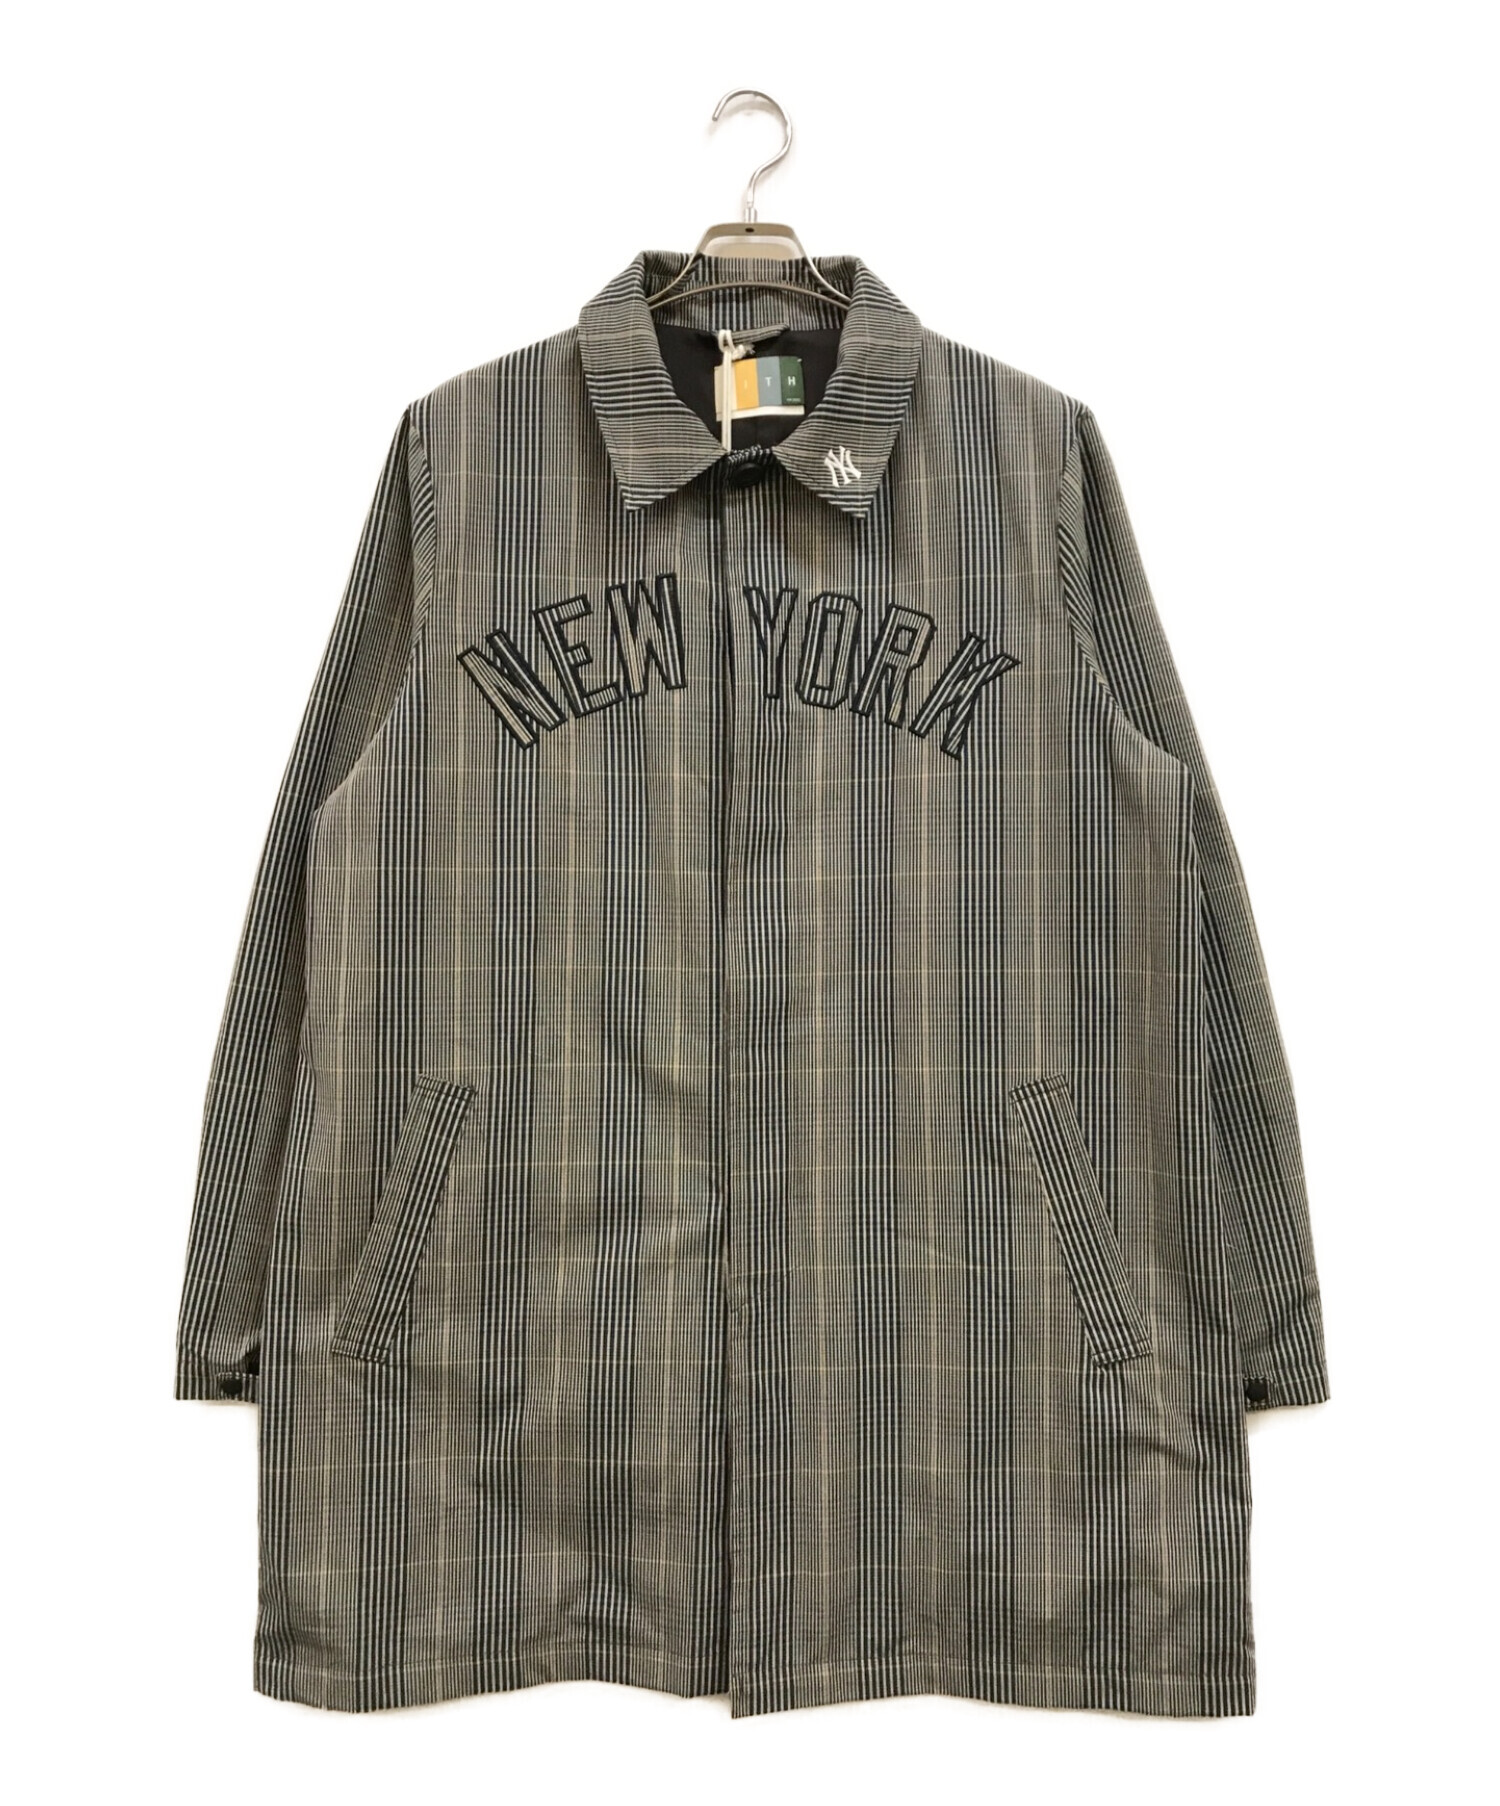 KITH (キス) Yankees Brighton Mac Coat グレー サイズ:L